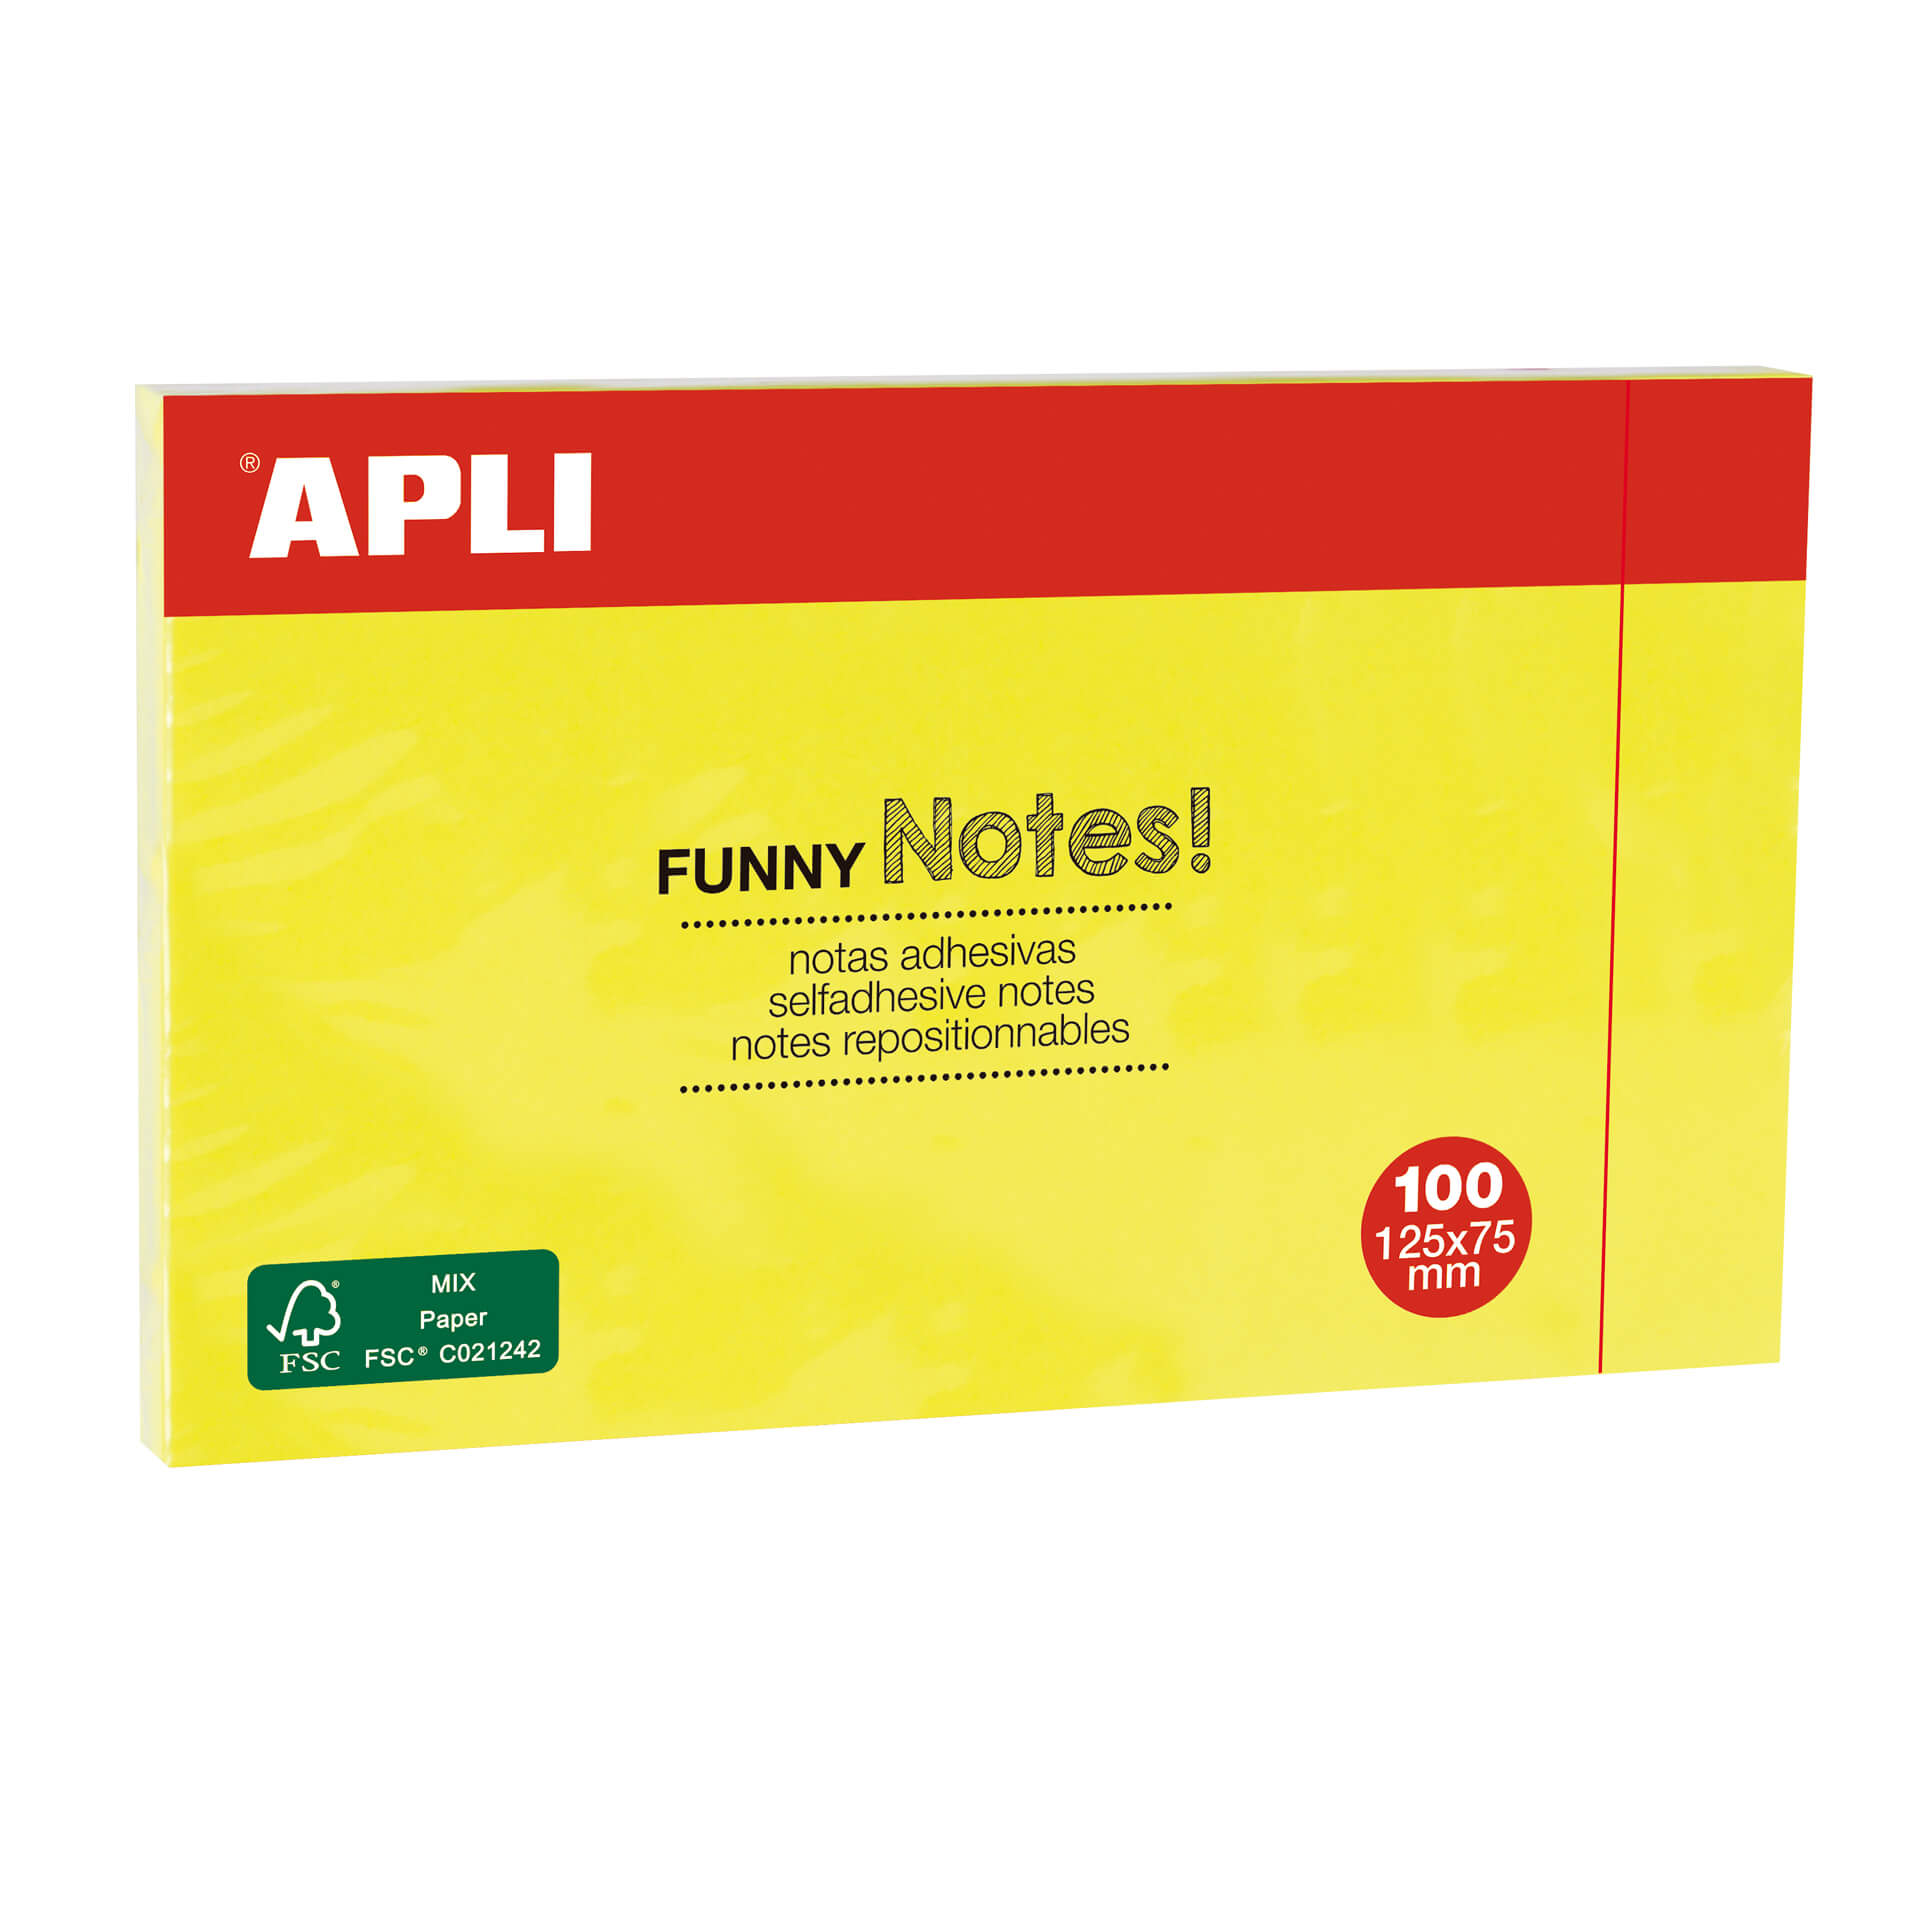 Apli Funny Sticky Notes 125x75mm - Bloc de 100 feuilles - Designs amusants - Adhésif de qualité - Jaune fluo